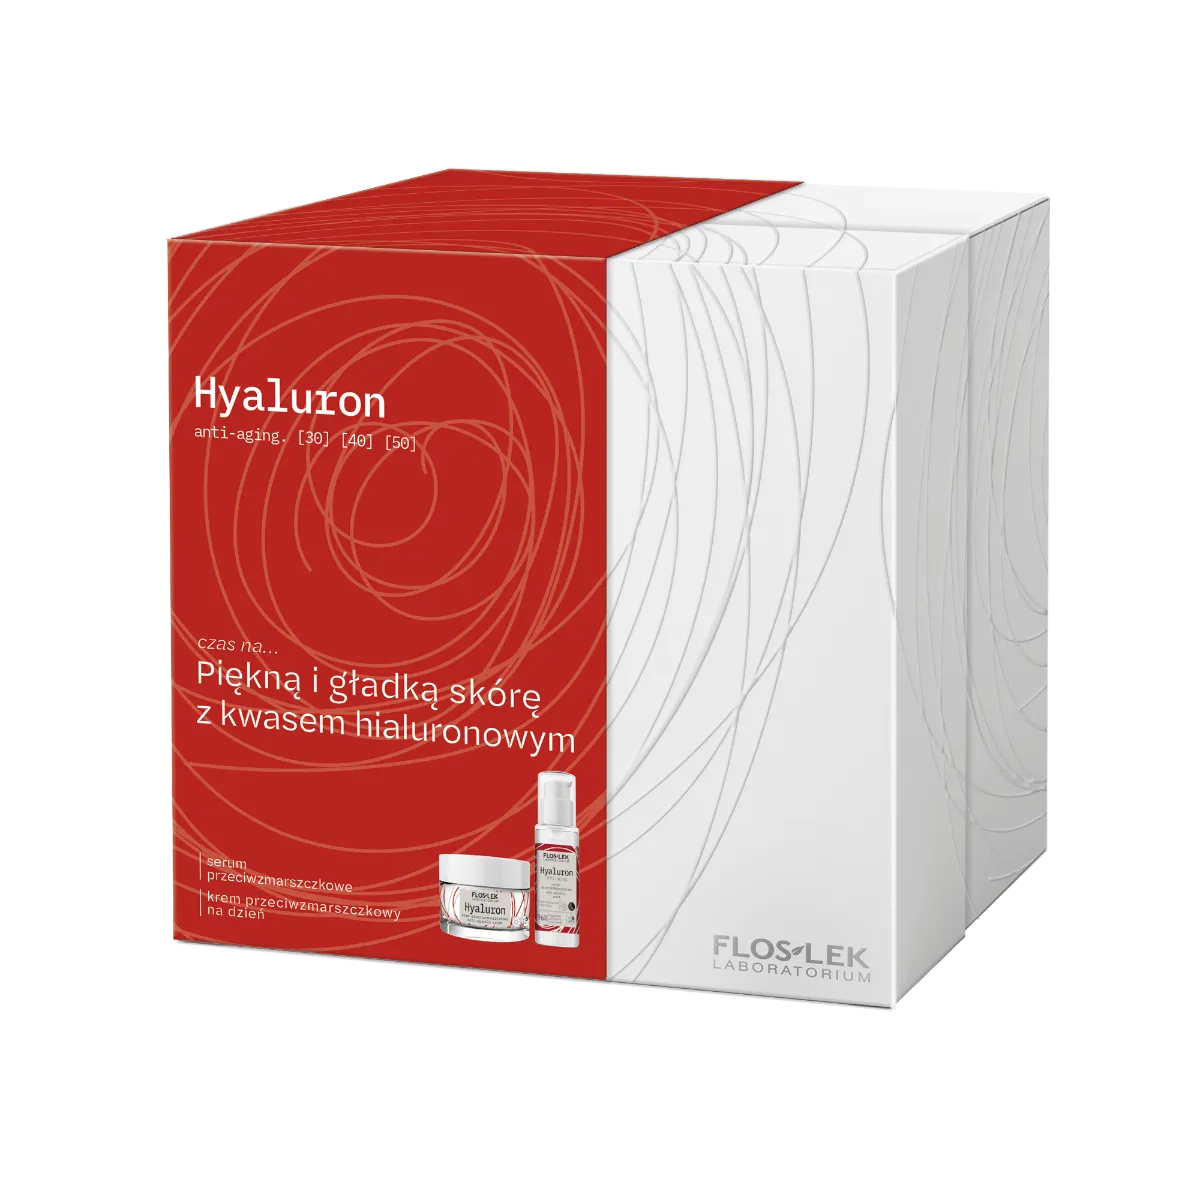 Floslek Hyaluron anti-aging zestaw kosmetyków dla kobiet, 30 ml + 50 ml